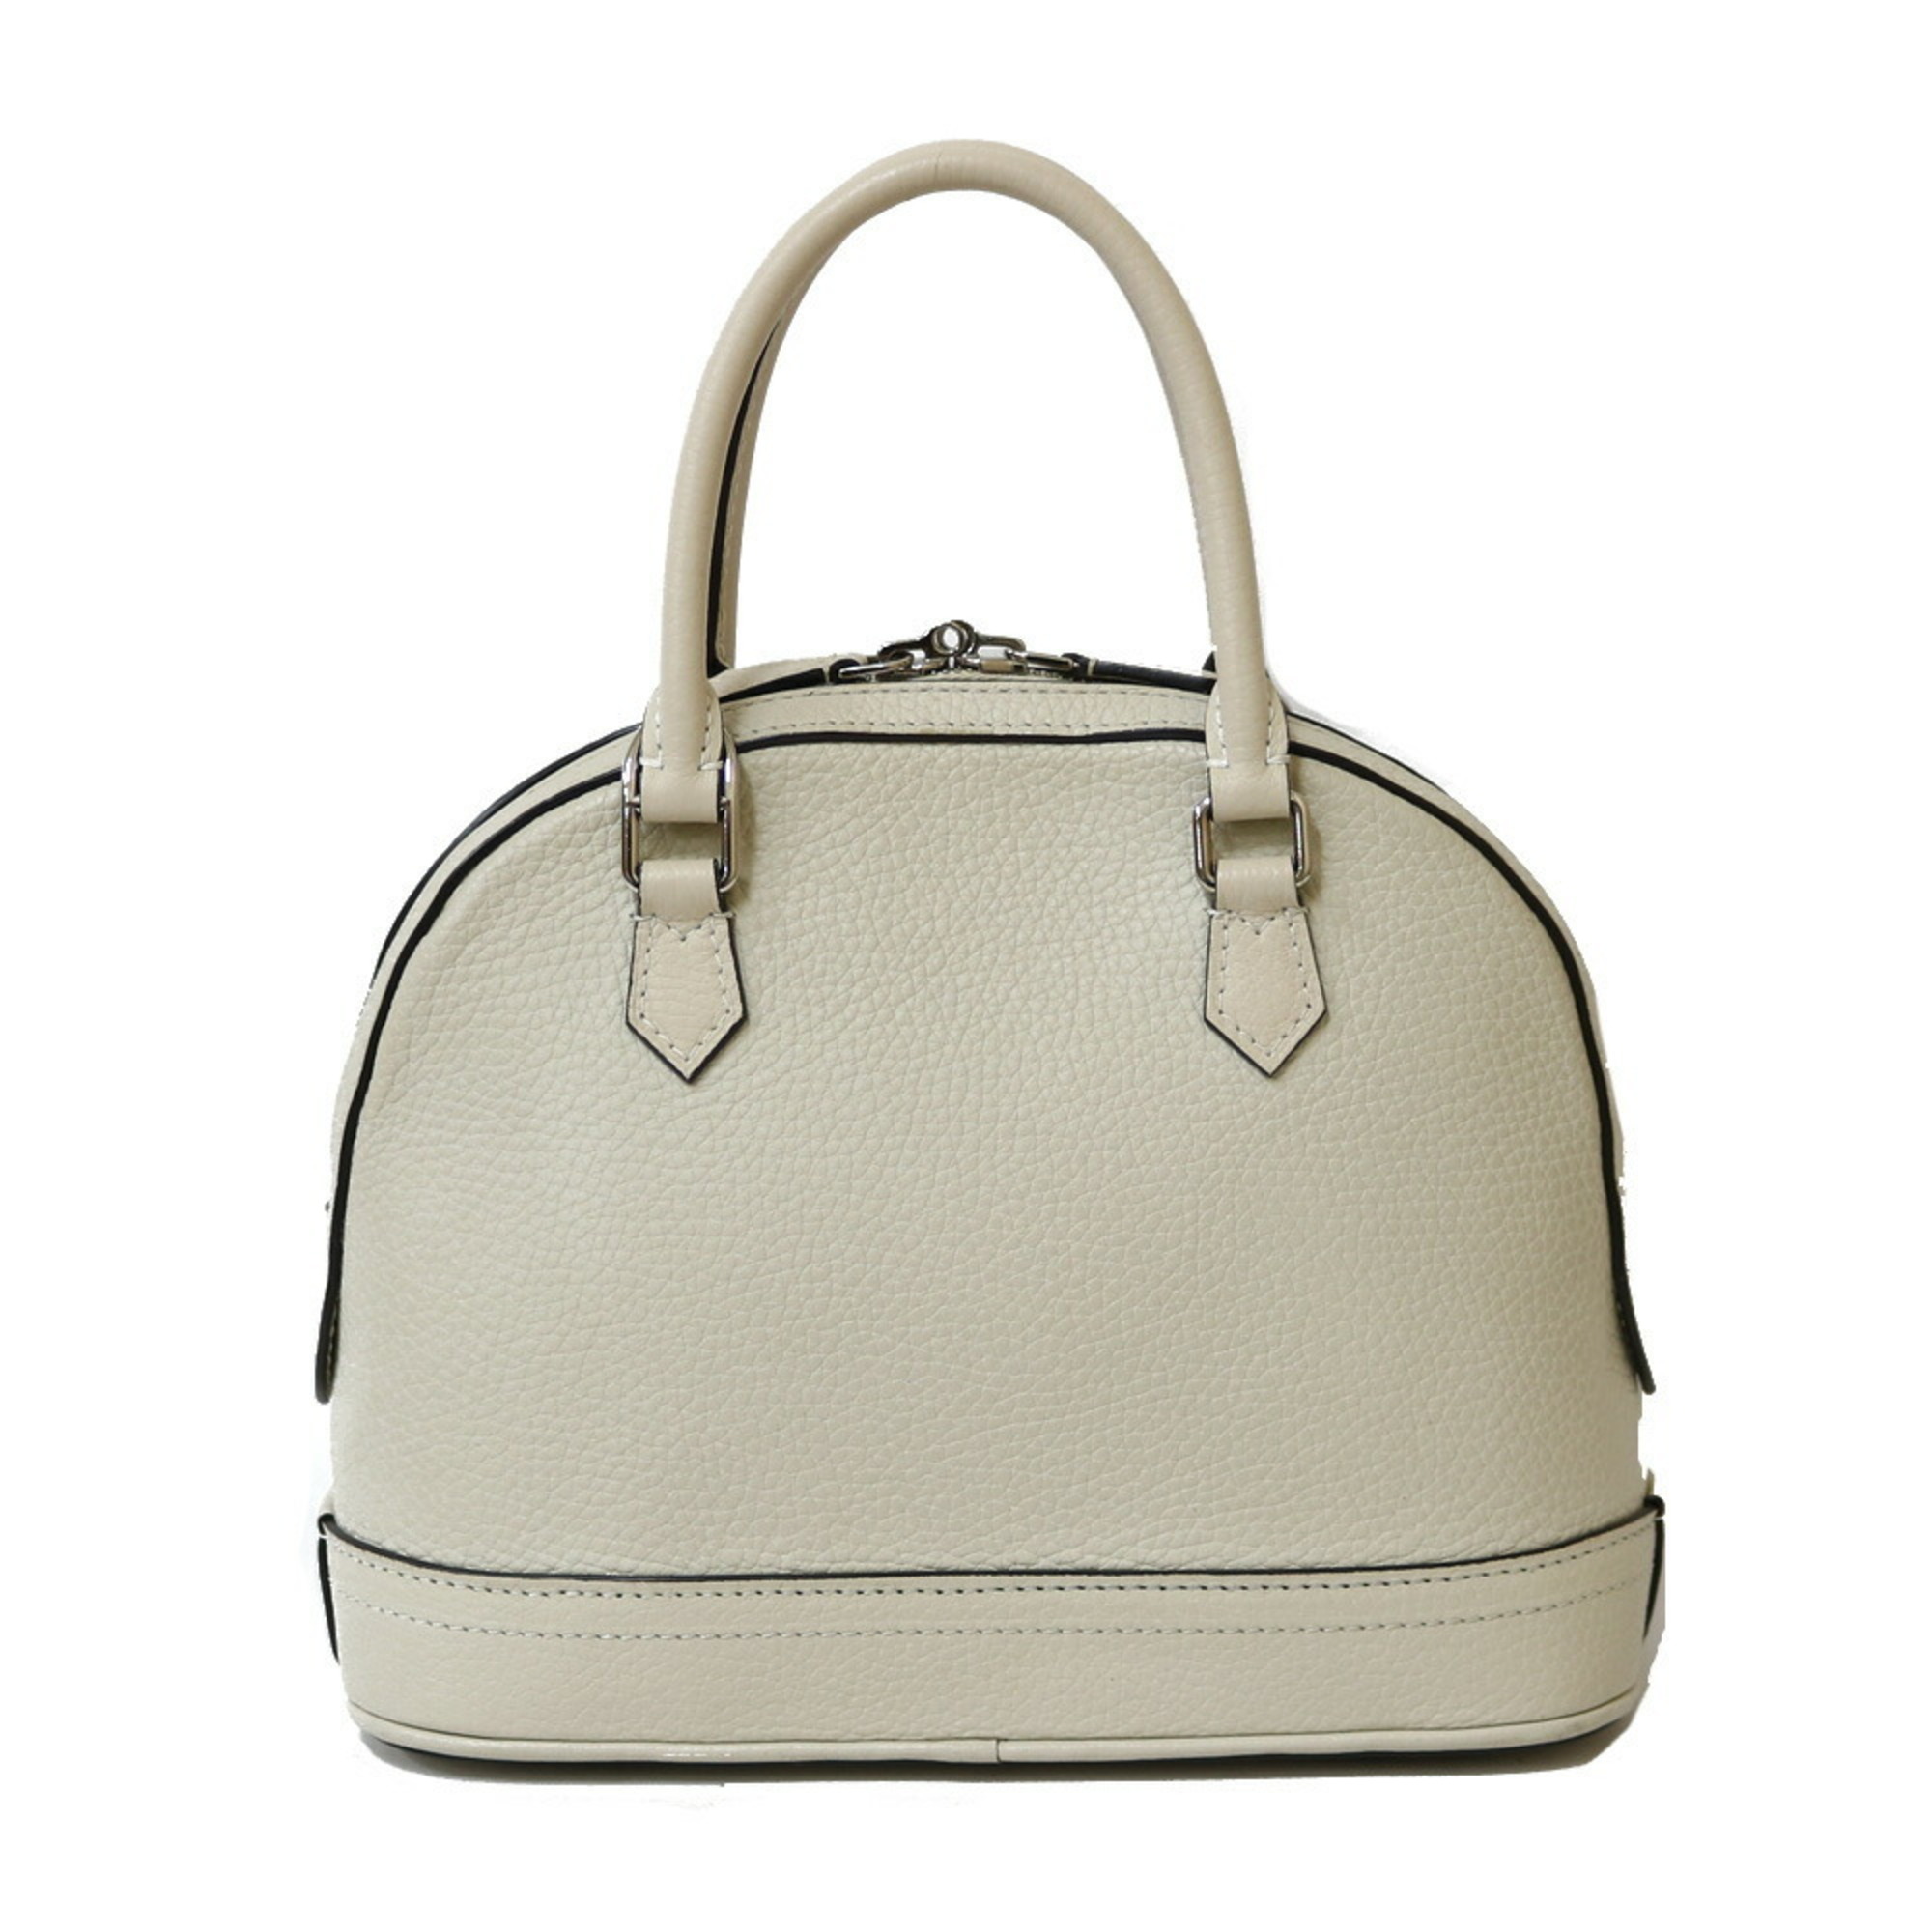 LOUIS VUITTON Louis Vuitton Handbag Parnacea Alma PPM M48878 White Broncasse Ladies Leather